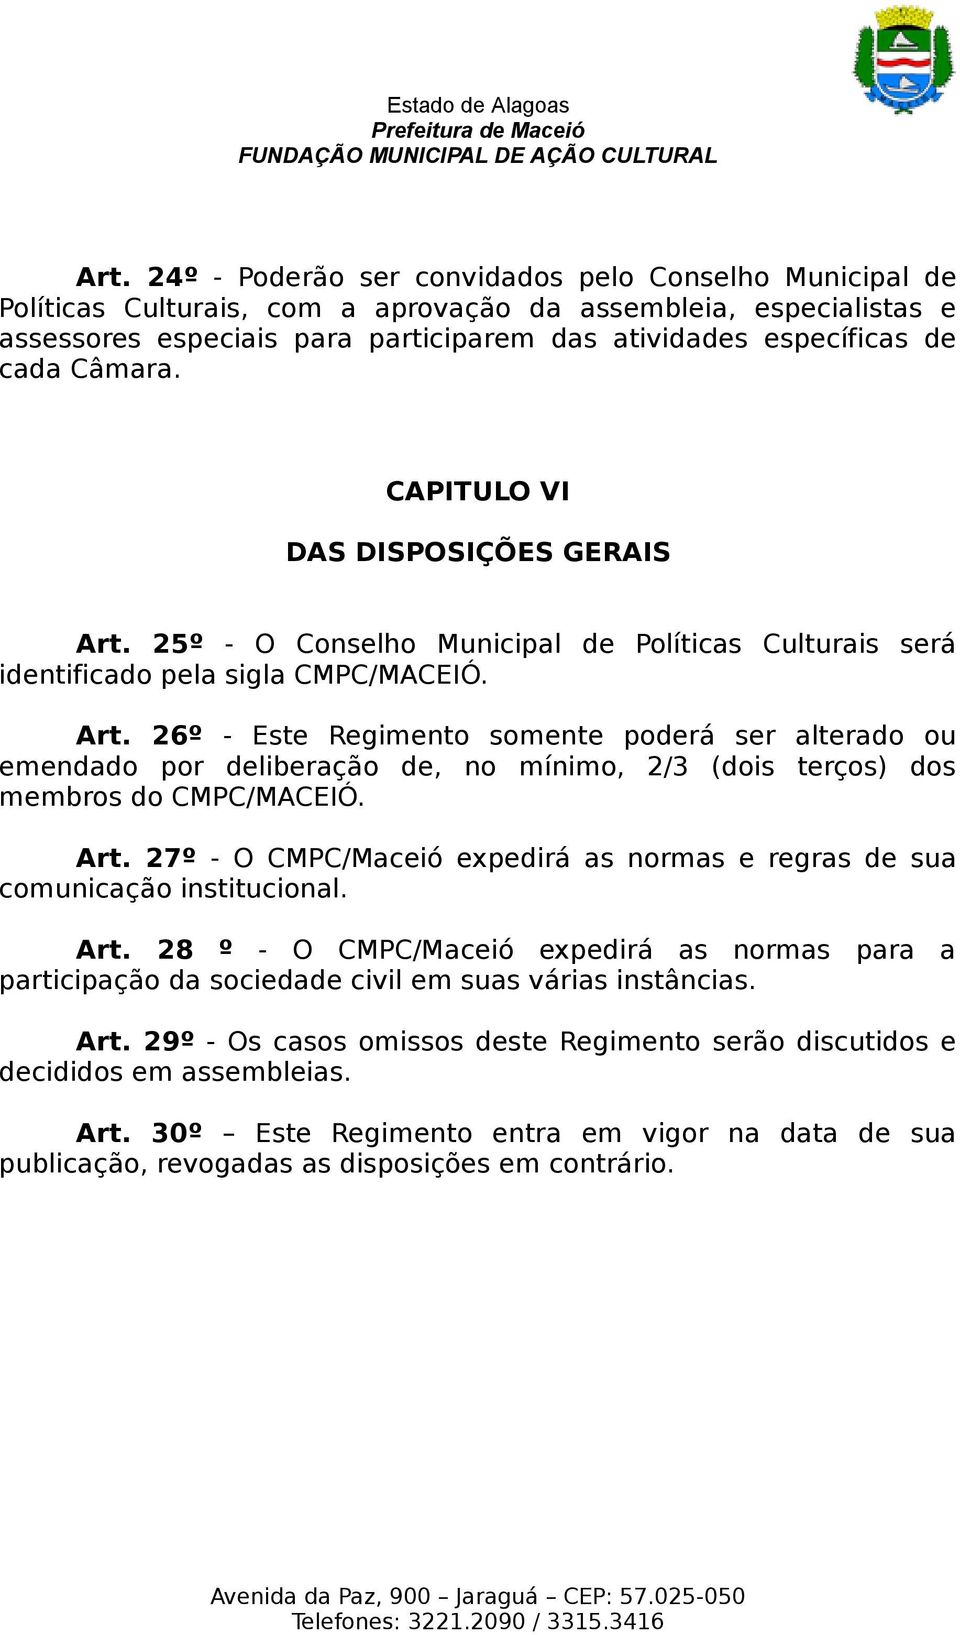 Art. 27º - O CMPC/Maceió expedirá as normas e regras de sua comunicação institucional. Art. 28 º - O CMPC/Maceió expedirá as normas para a participação da sociedade civil em suas várias instâncias.